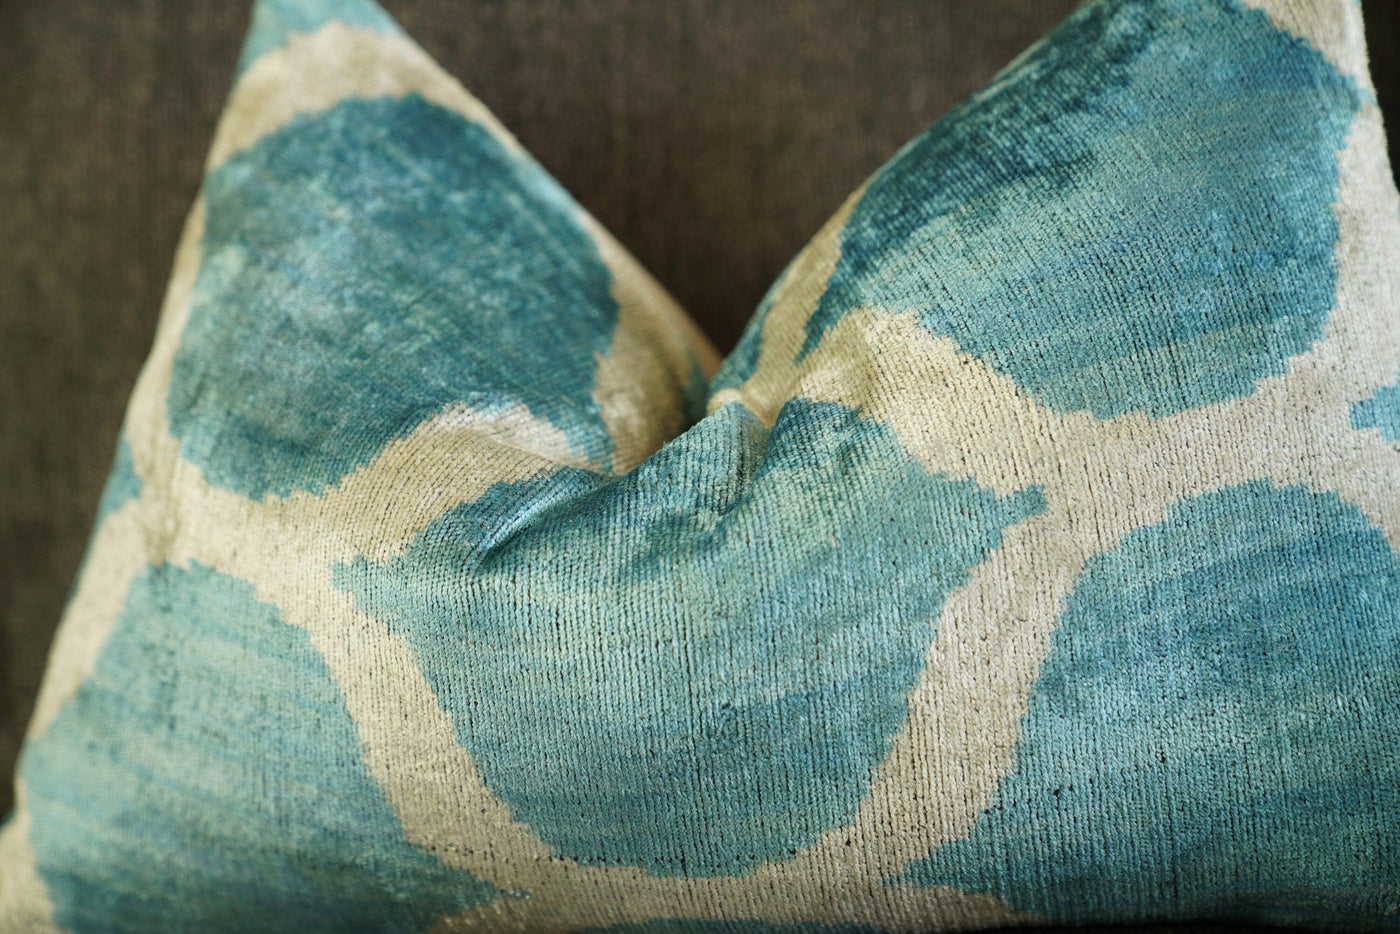 Canvello Handmade Velvet Lumbar Pillow For Sofa - 16x24 in